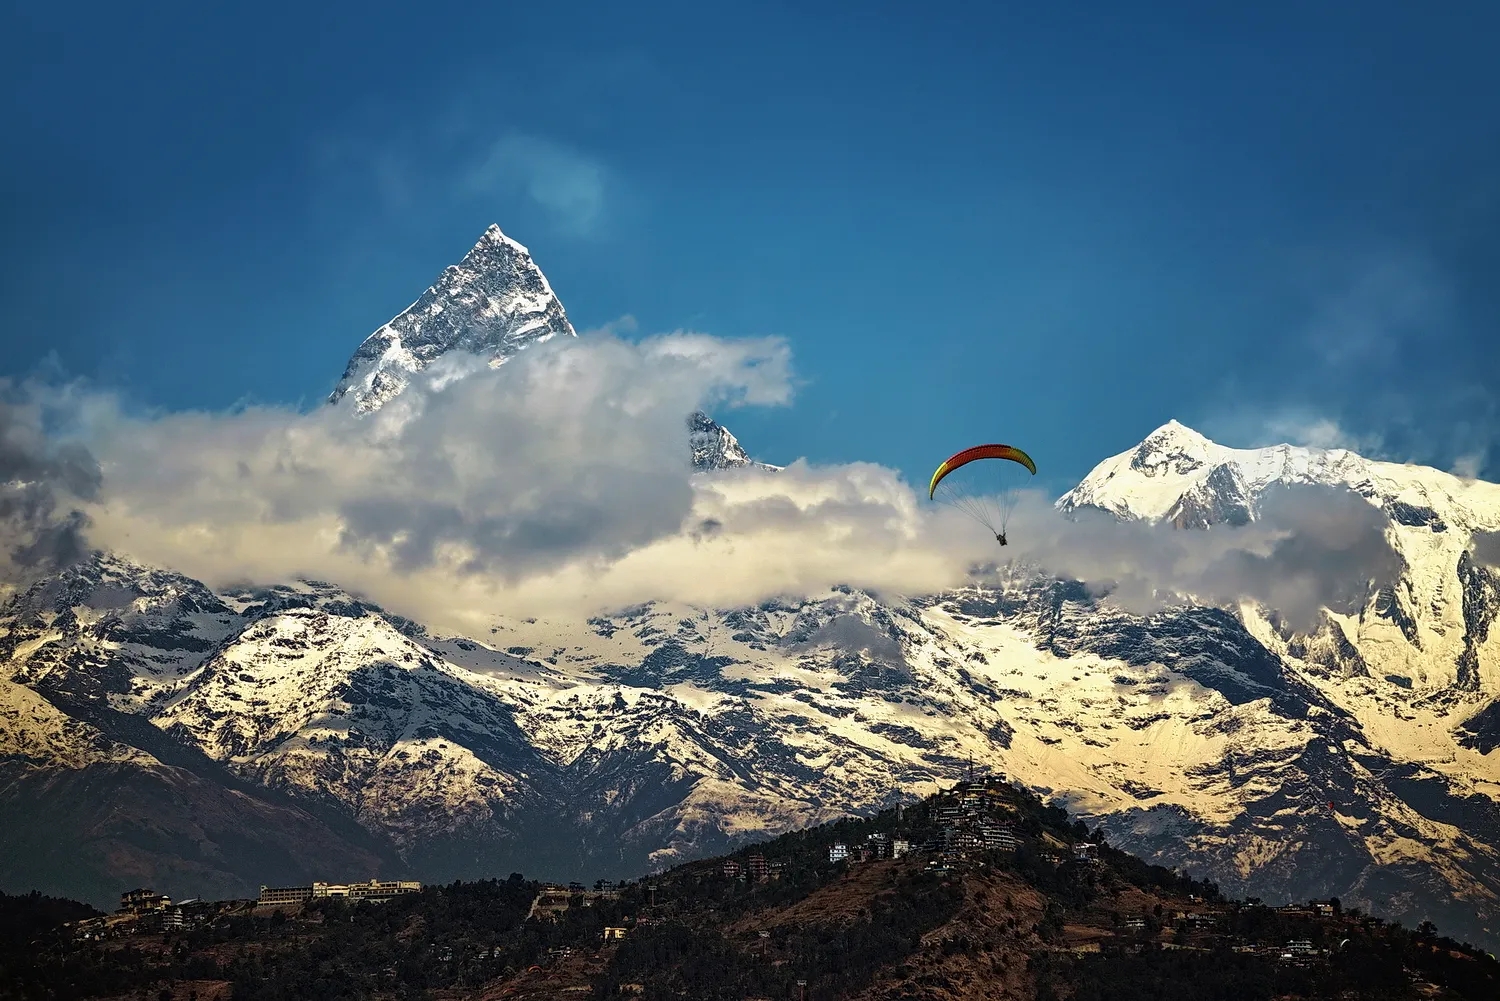 尼泊尔全运会一滑翔伞运动员坠落遇难,尼全国暂停滑翔伞运动